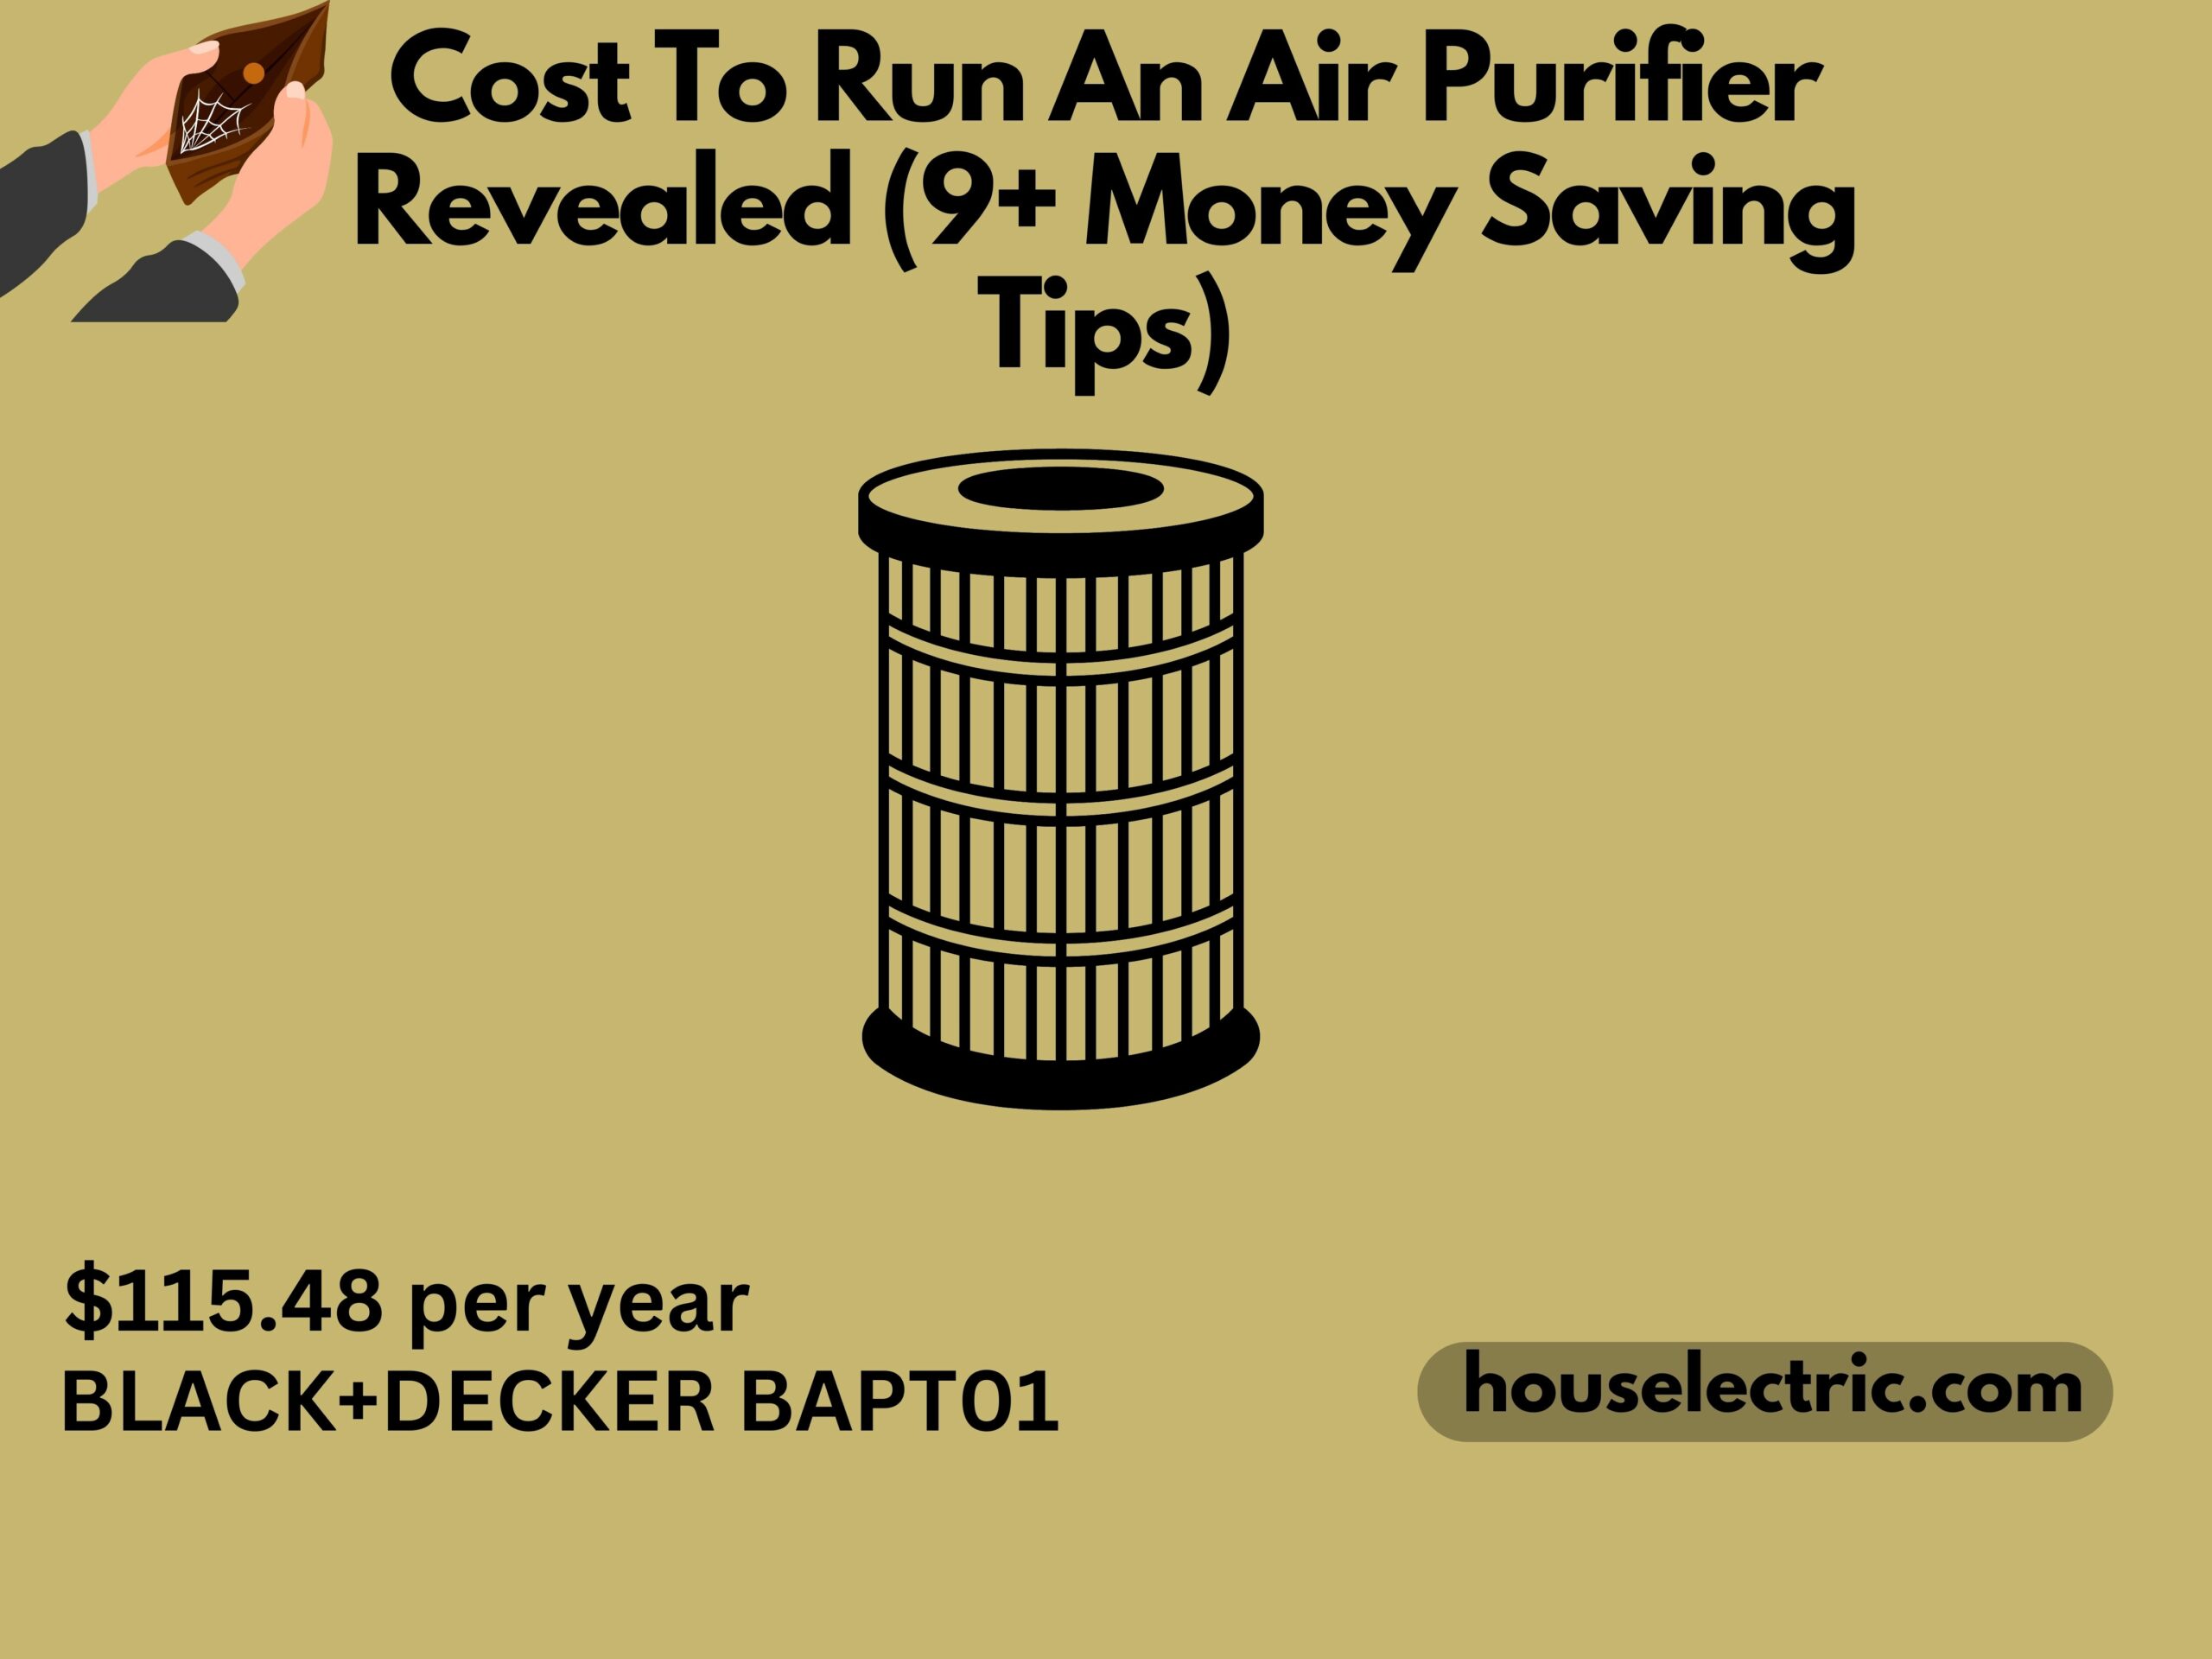 Cost to run an air purifier